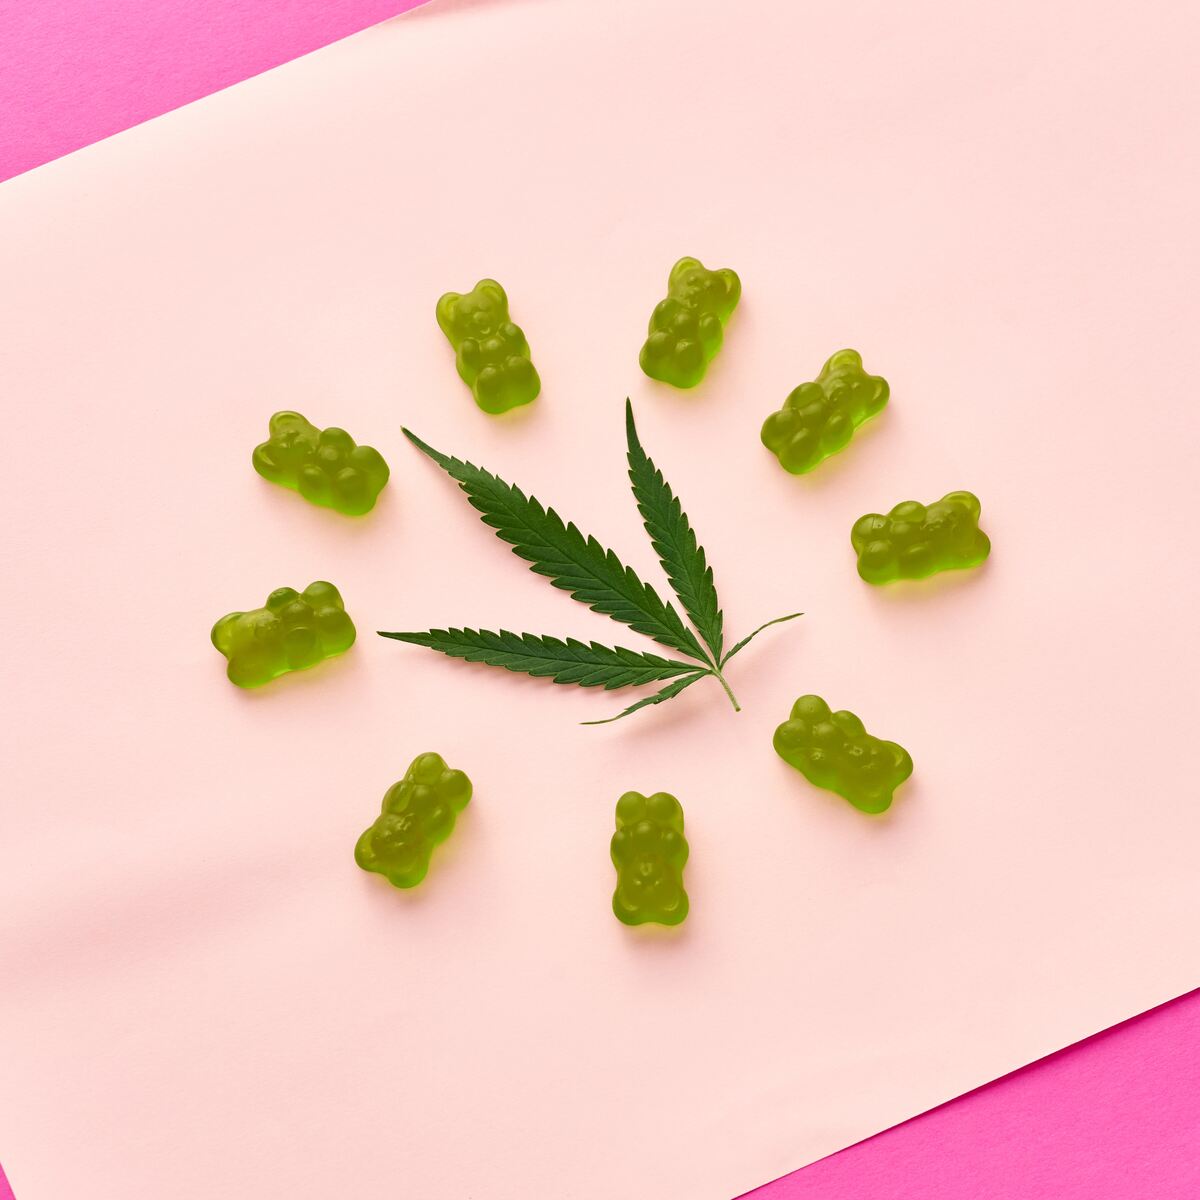 How to Make Cannabis Gummies